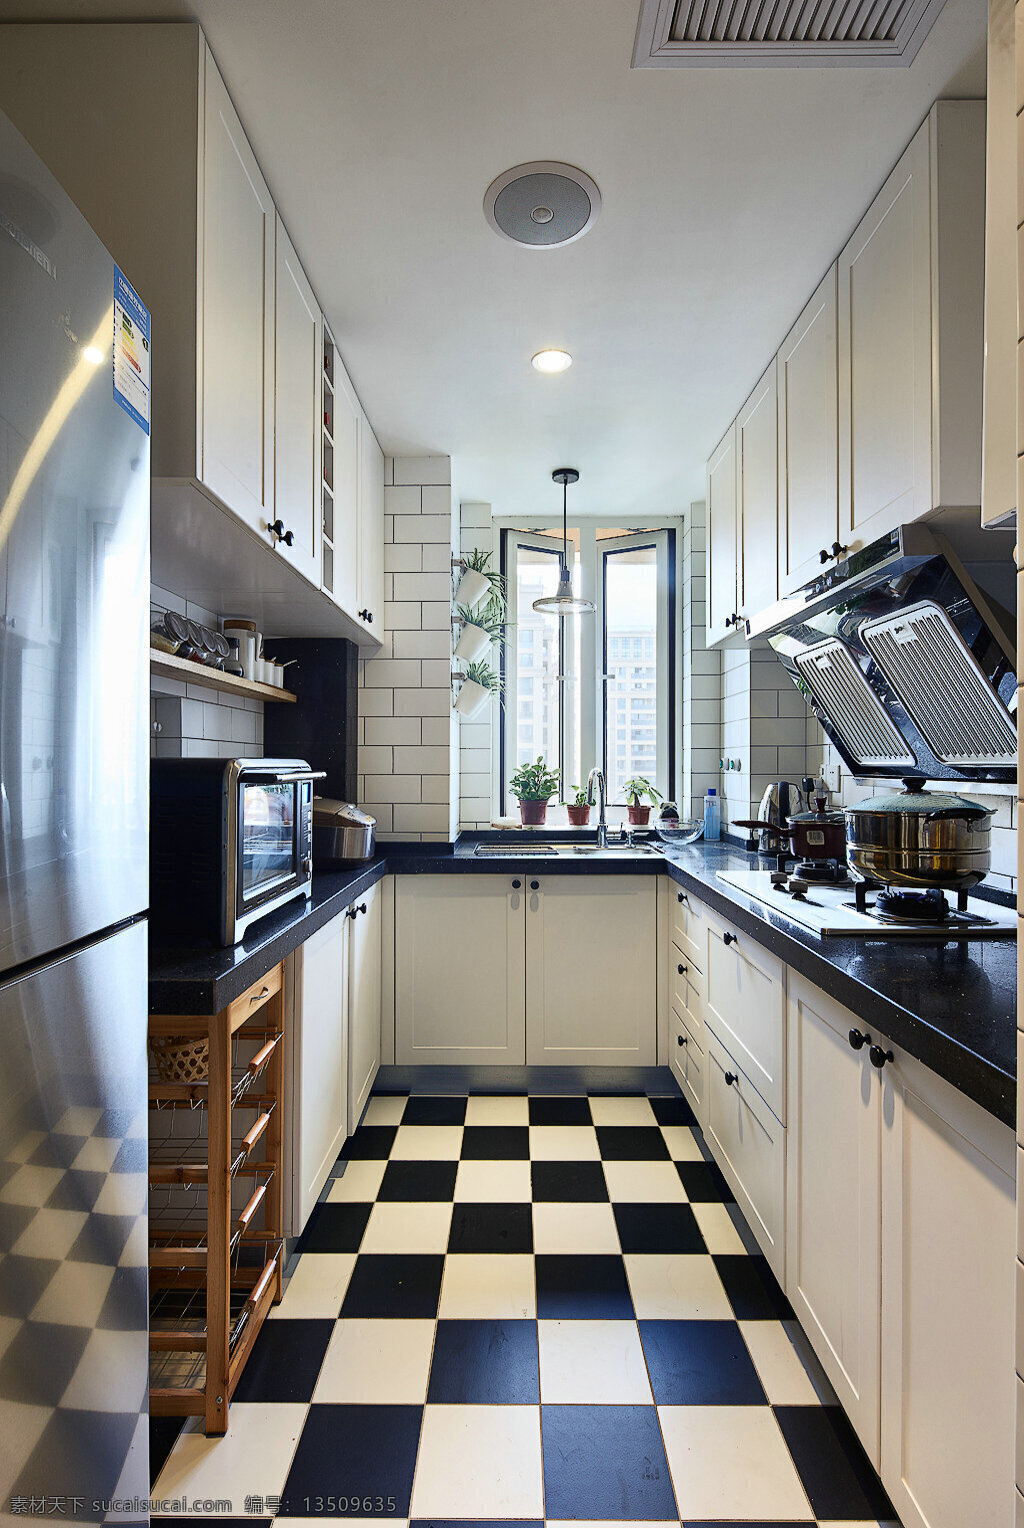 时尚 方形 格 地板 厨房 室内装修 效果图 白色壁柜 格子地板 黑色灶台 客厅装修